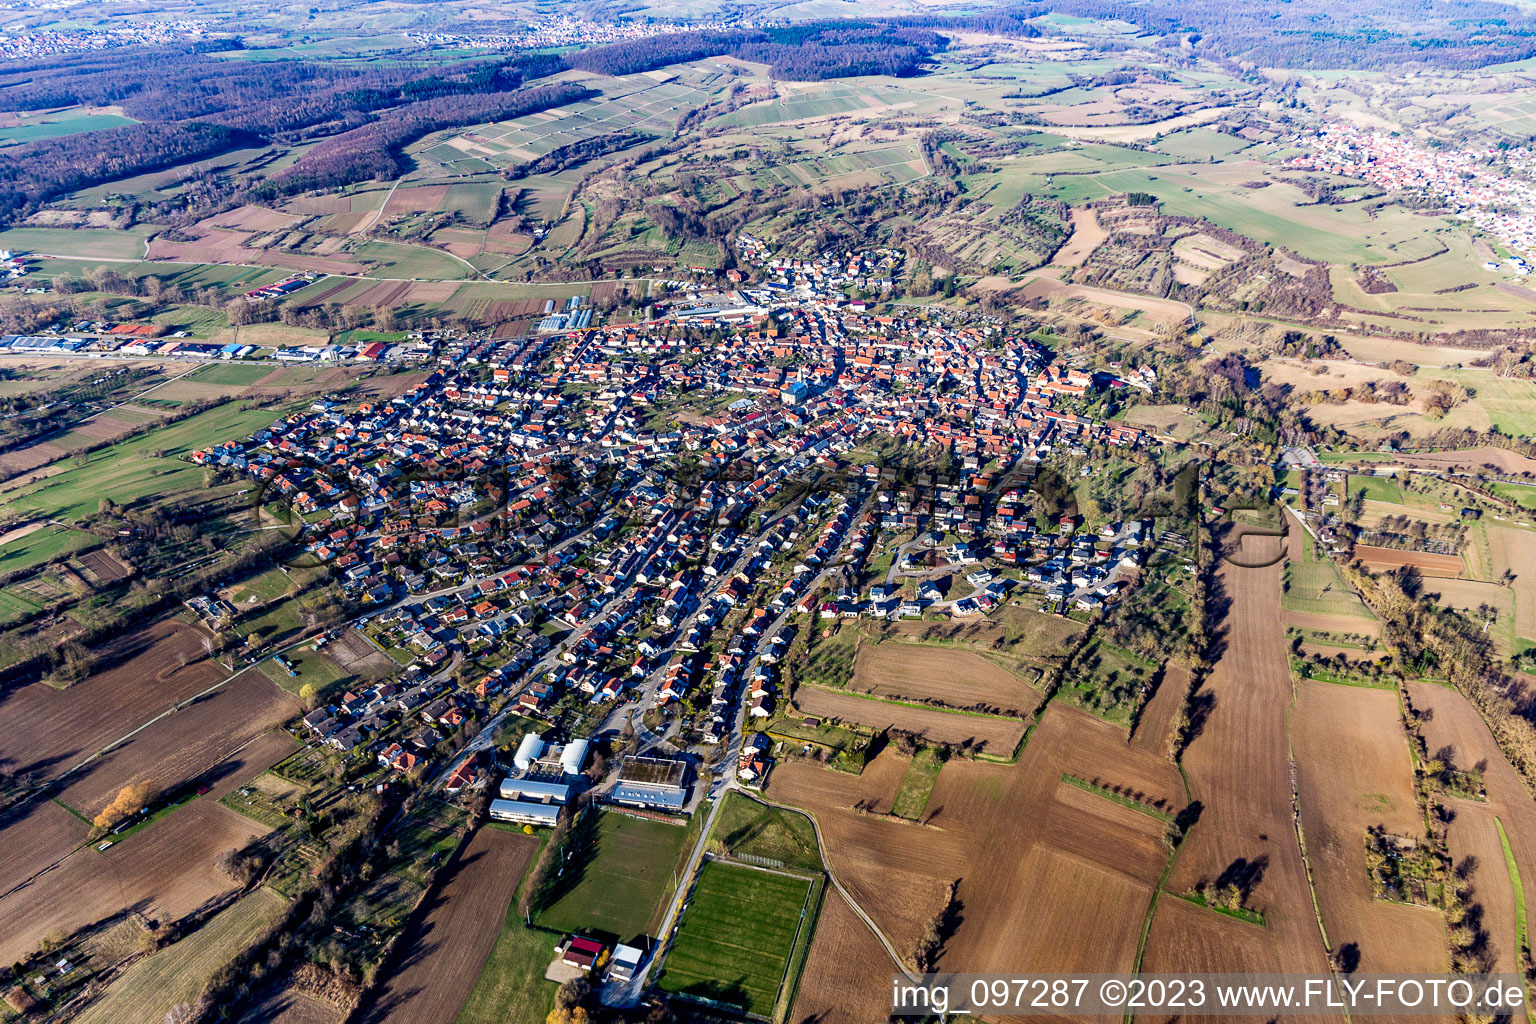 District Unteröwisheim in Kraichtal in the state Baden-Wuerttemberg, Germany from above